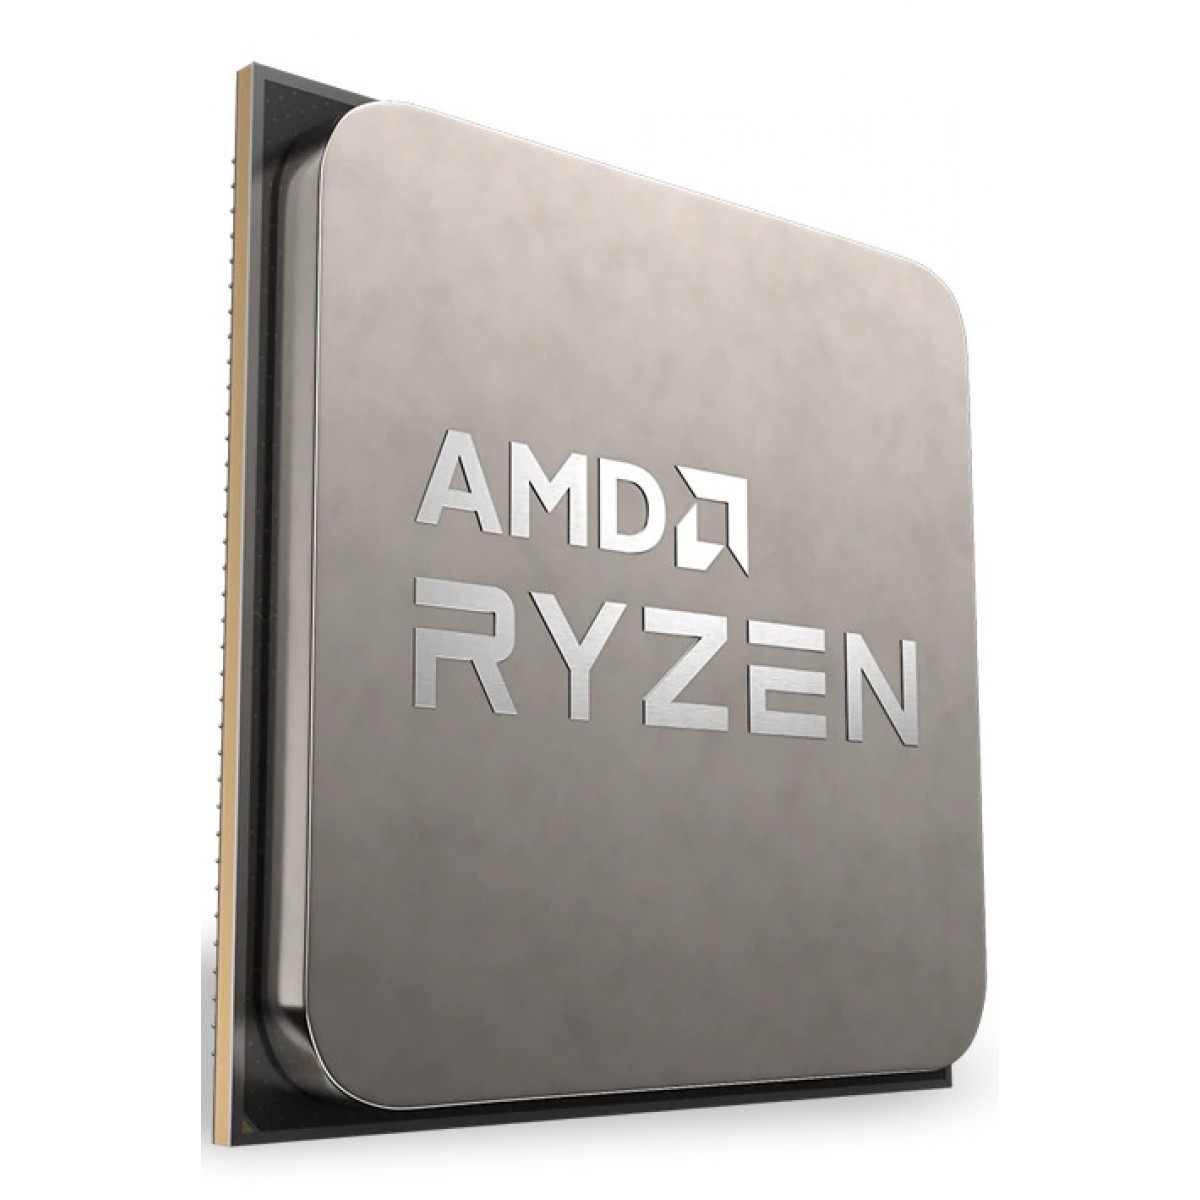 Processador AMD Ryzen 7 5700G 3.8GHz (4.6GHz Turbo), 8-Cores 16-Threads, Cooler Wraith Stealth, AM4, Com vídeo integrado, 100-100000263BOX - Open Box